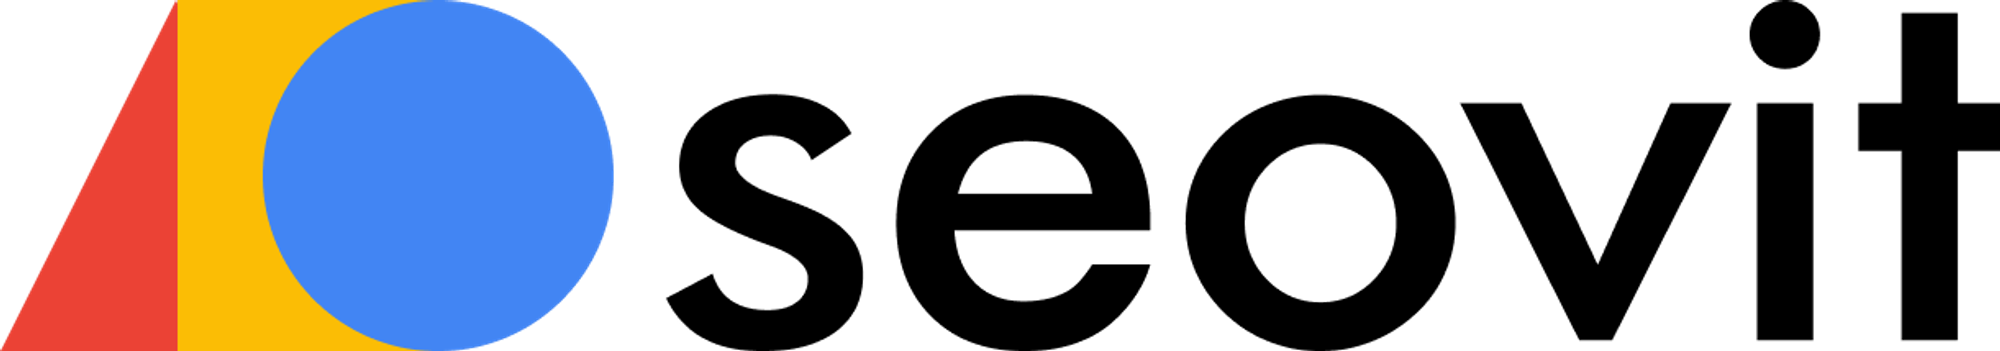 Modern logo design for seovit.com